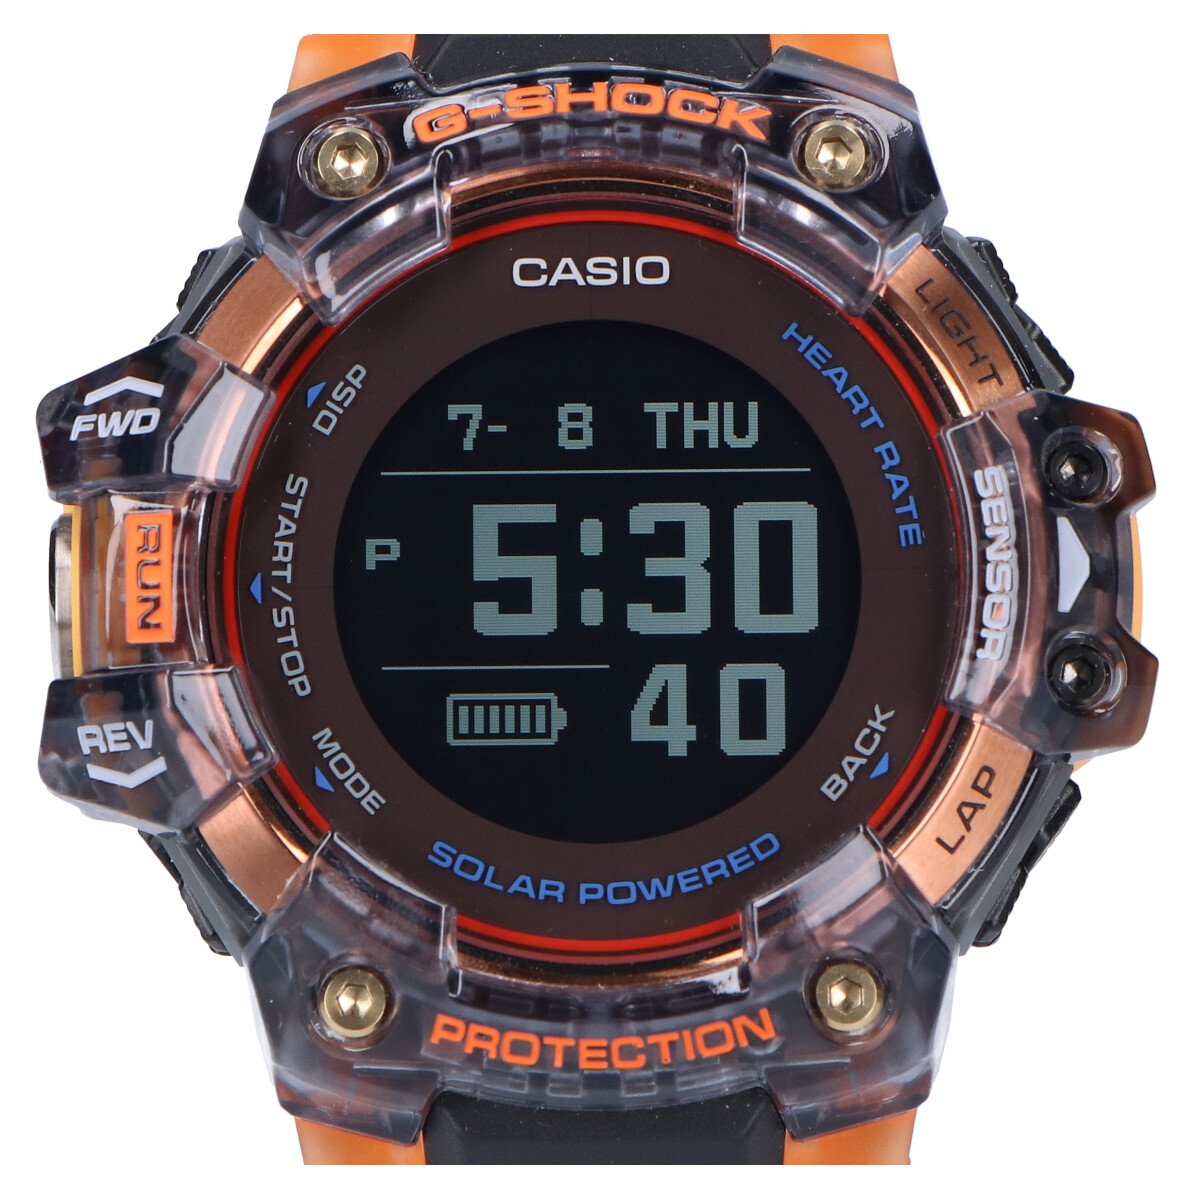 ジーショックの2020年製 G-SQUAD GBD-H1000-1A4JR 心拍計/GPS機能 デジタル 腕時計の買取実績です。